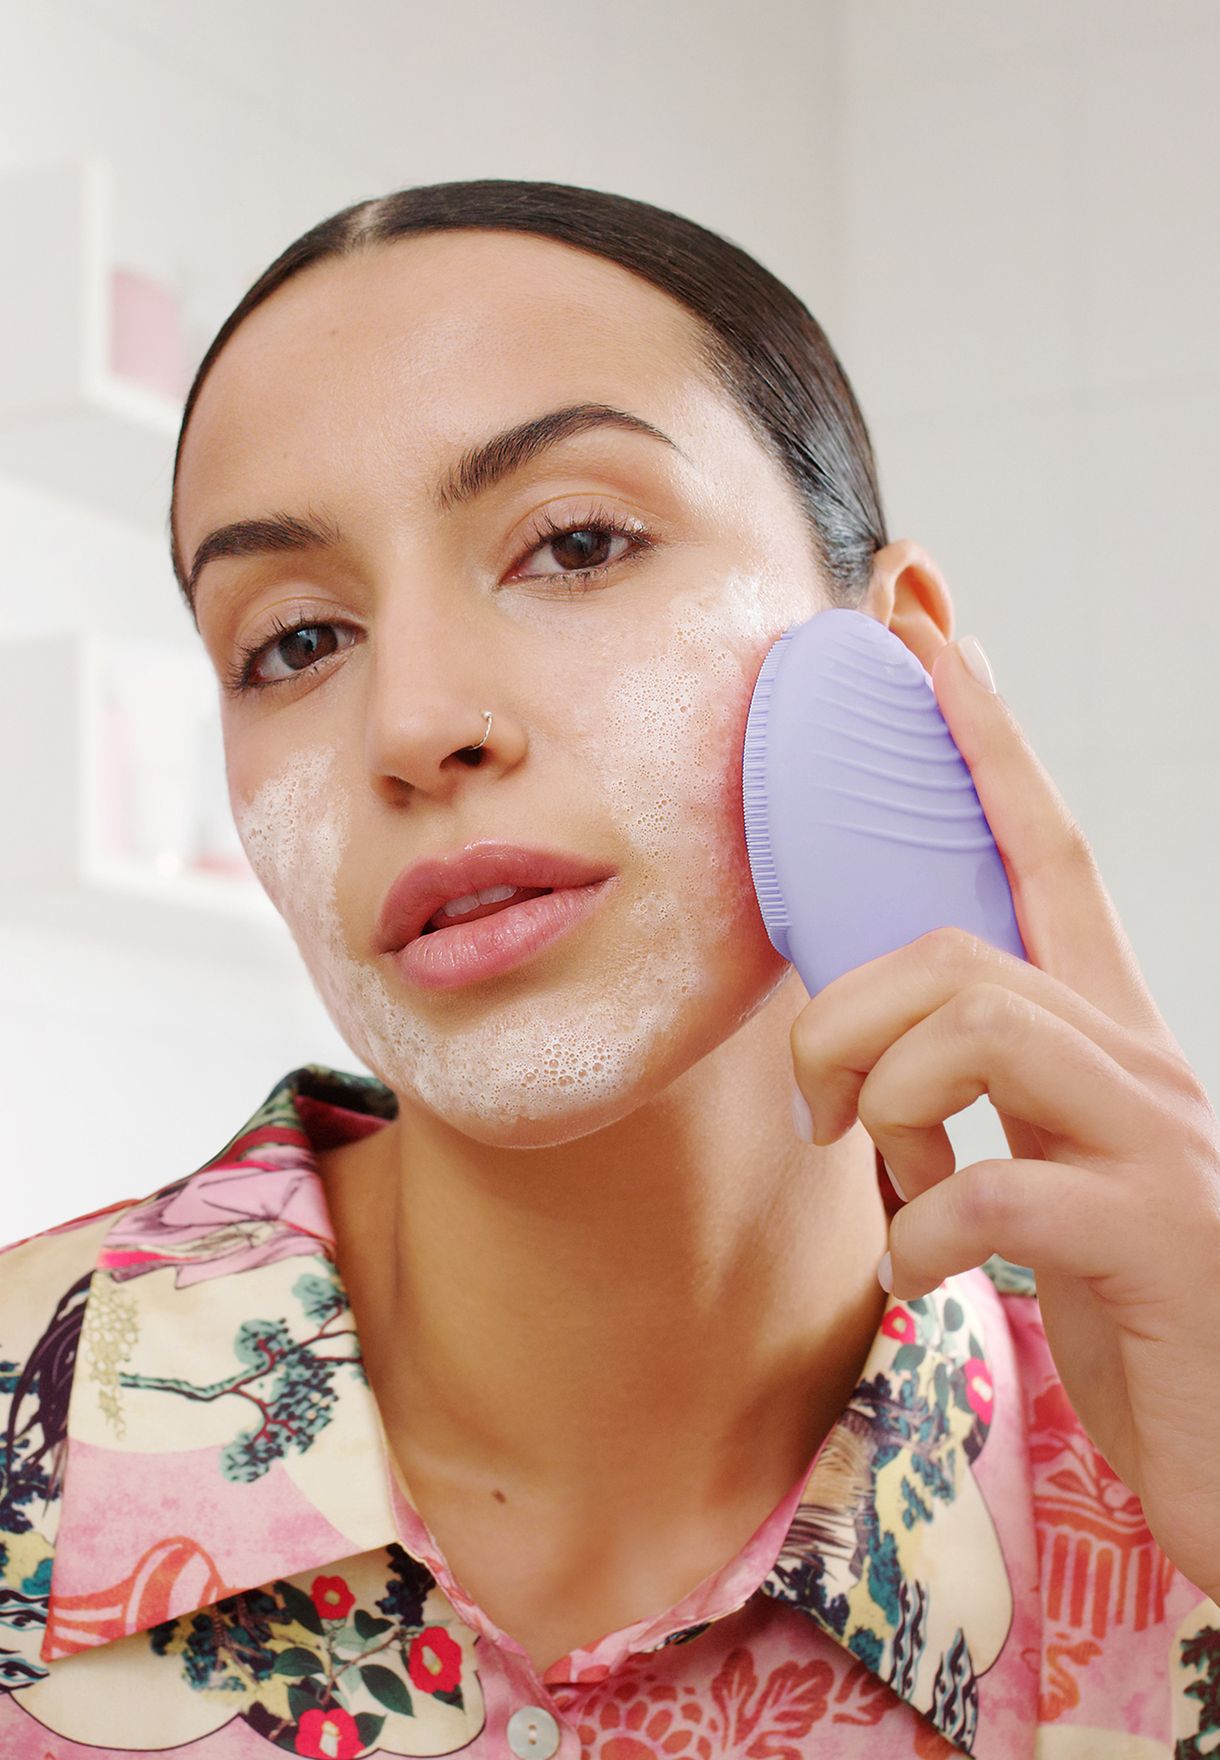 LUNA 3 Facial Cleansing Brush For Sensitive Skin